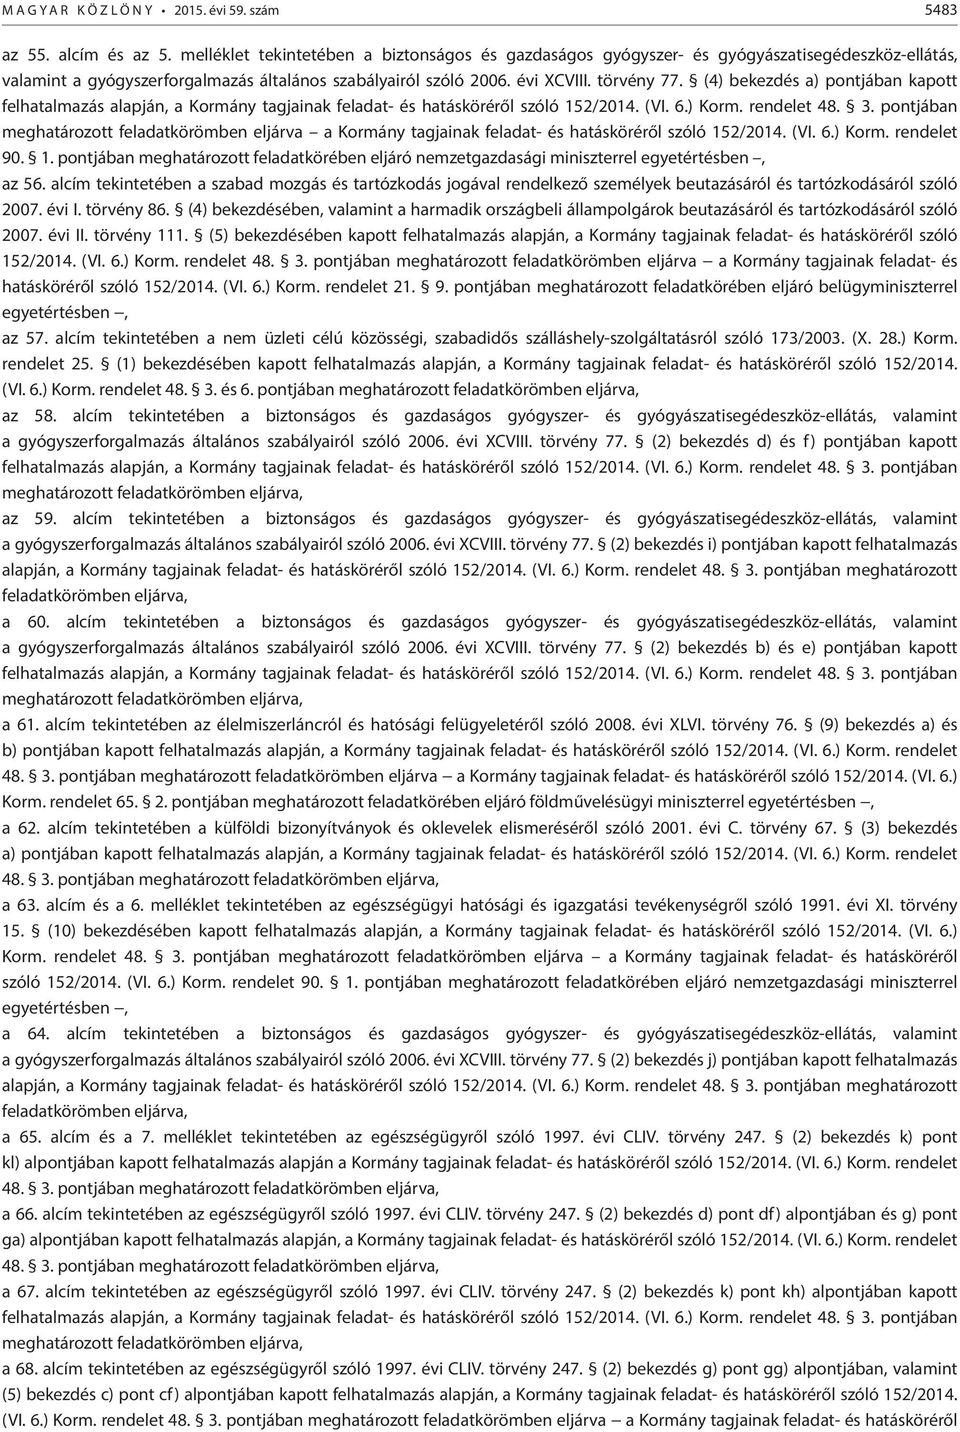 (4) bekezdés a) pontjában kapott felhatalmazás alapján, a Kormány tagjainak feladat- és hatásköréről szóló 152/2014. (VI. 6.) Korm. rendelet 48. 3.